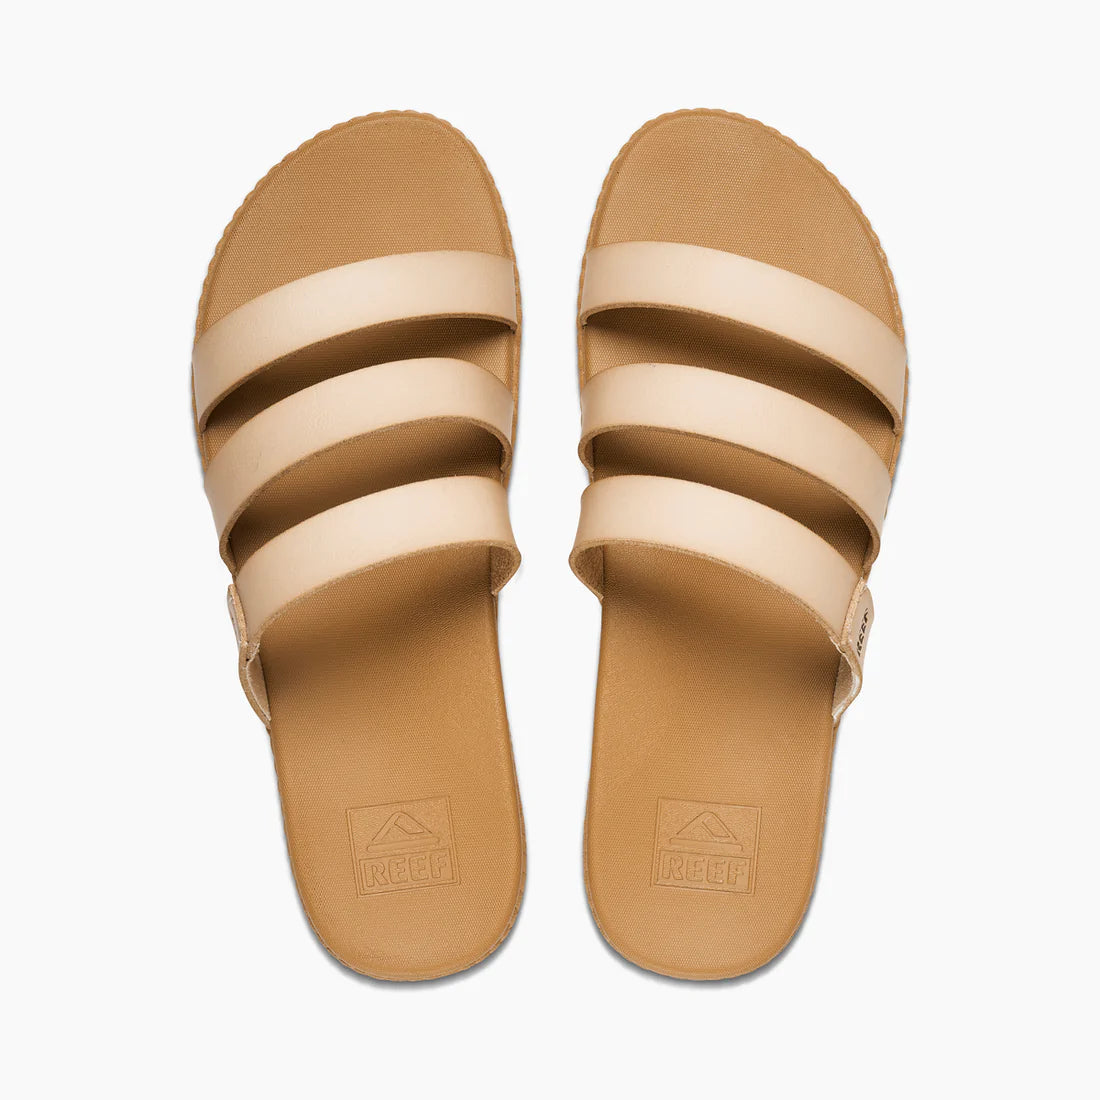 Reef Cushion Ruby Women's Slide Sandals - Seashell Womens Footwear